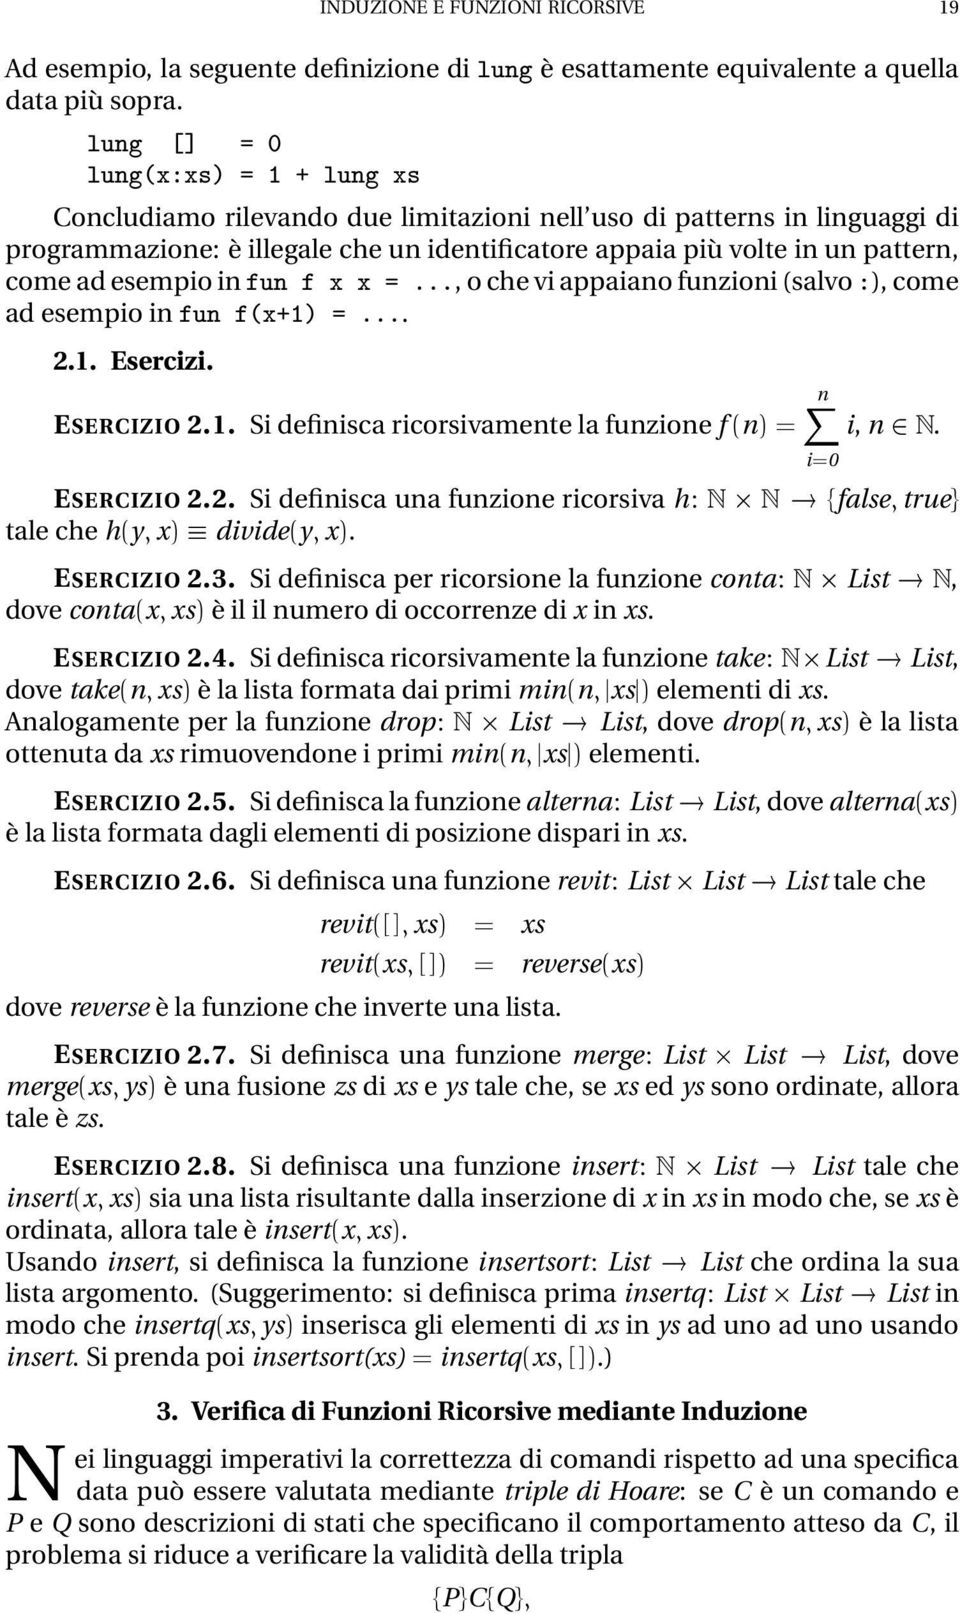 ÙÒ Ü Ü ººº, o che vi appaiano funzioni (salvo ), come ad esempio in ÙÒ Ü ½µ ººº. 2.1. Esercizi. ESERCIZIO 2.1. Si definisca ricorsivamente la funzione f nµ n i0 i, n ¾ Æ. ESERCIZIO 2.2. Si definisca una funzione ricorsiva h Æ Æ false true tale che h y xµ divide y xµ.